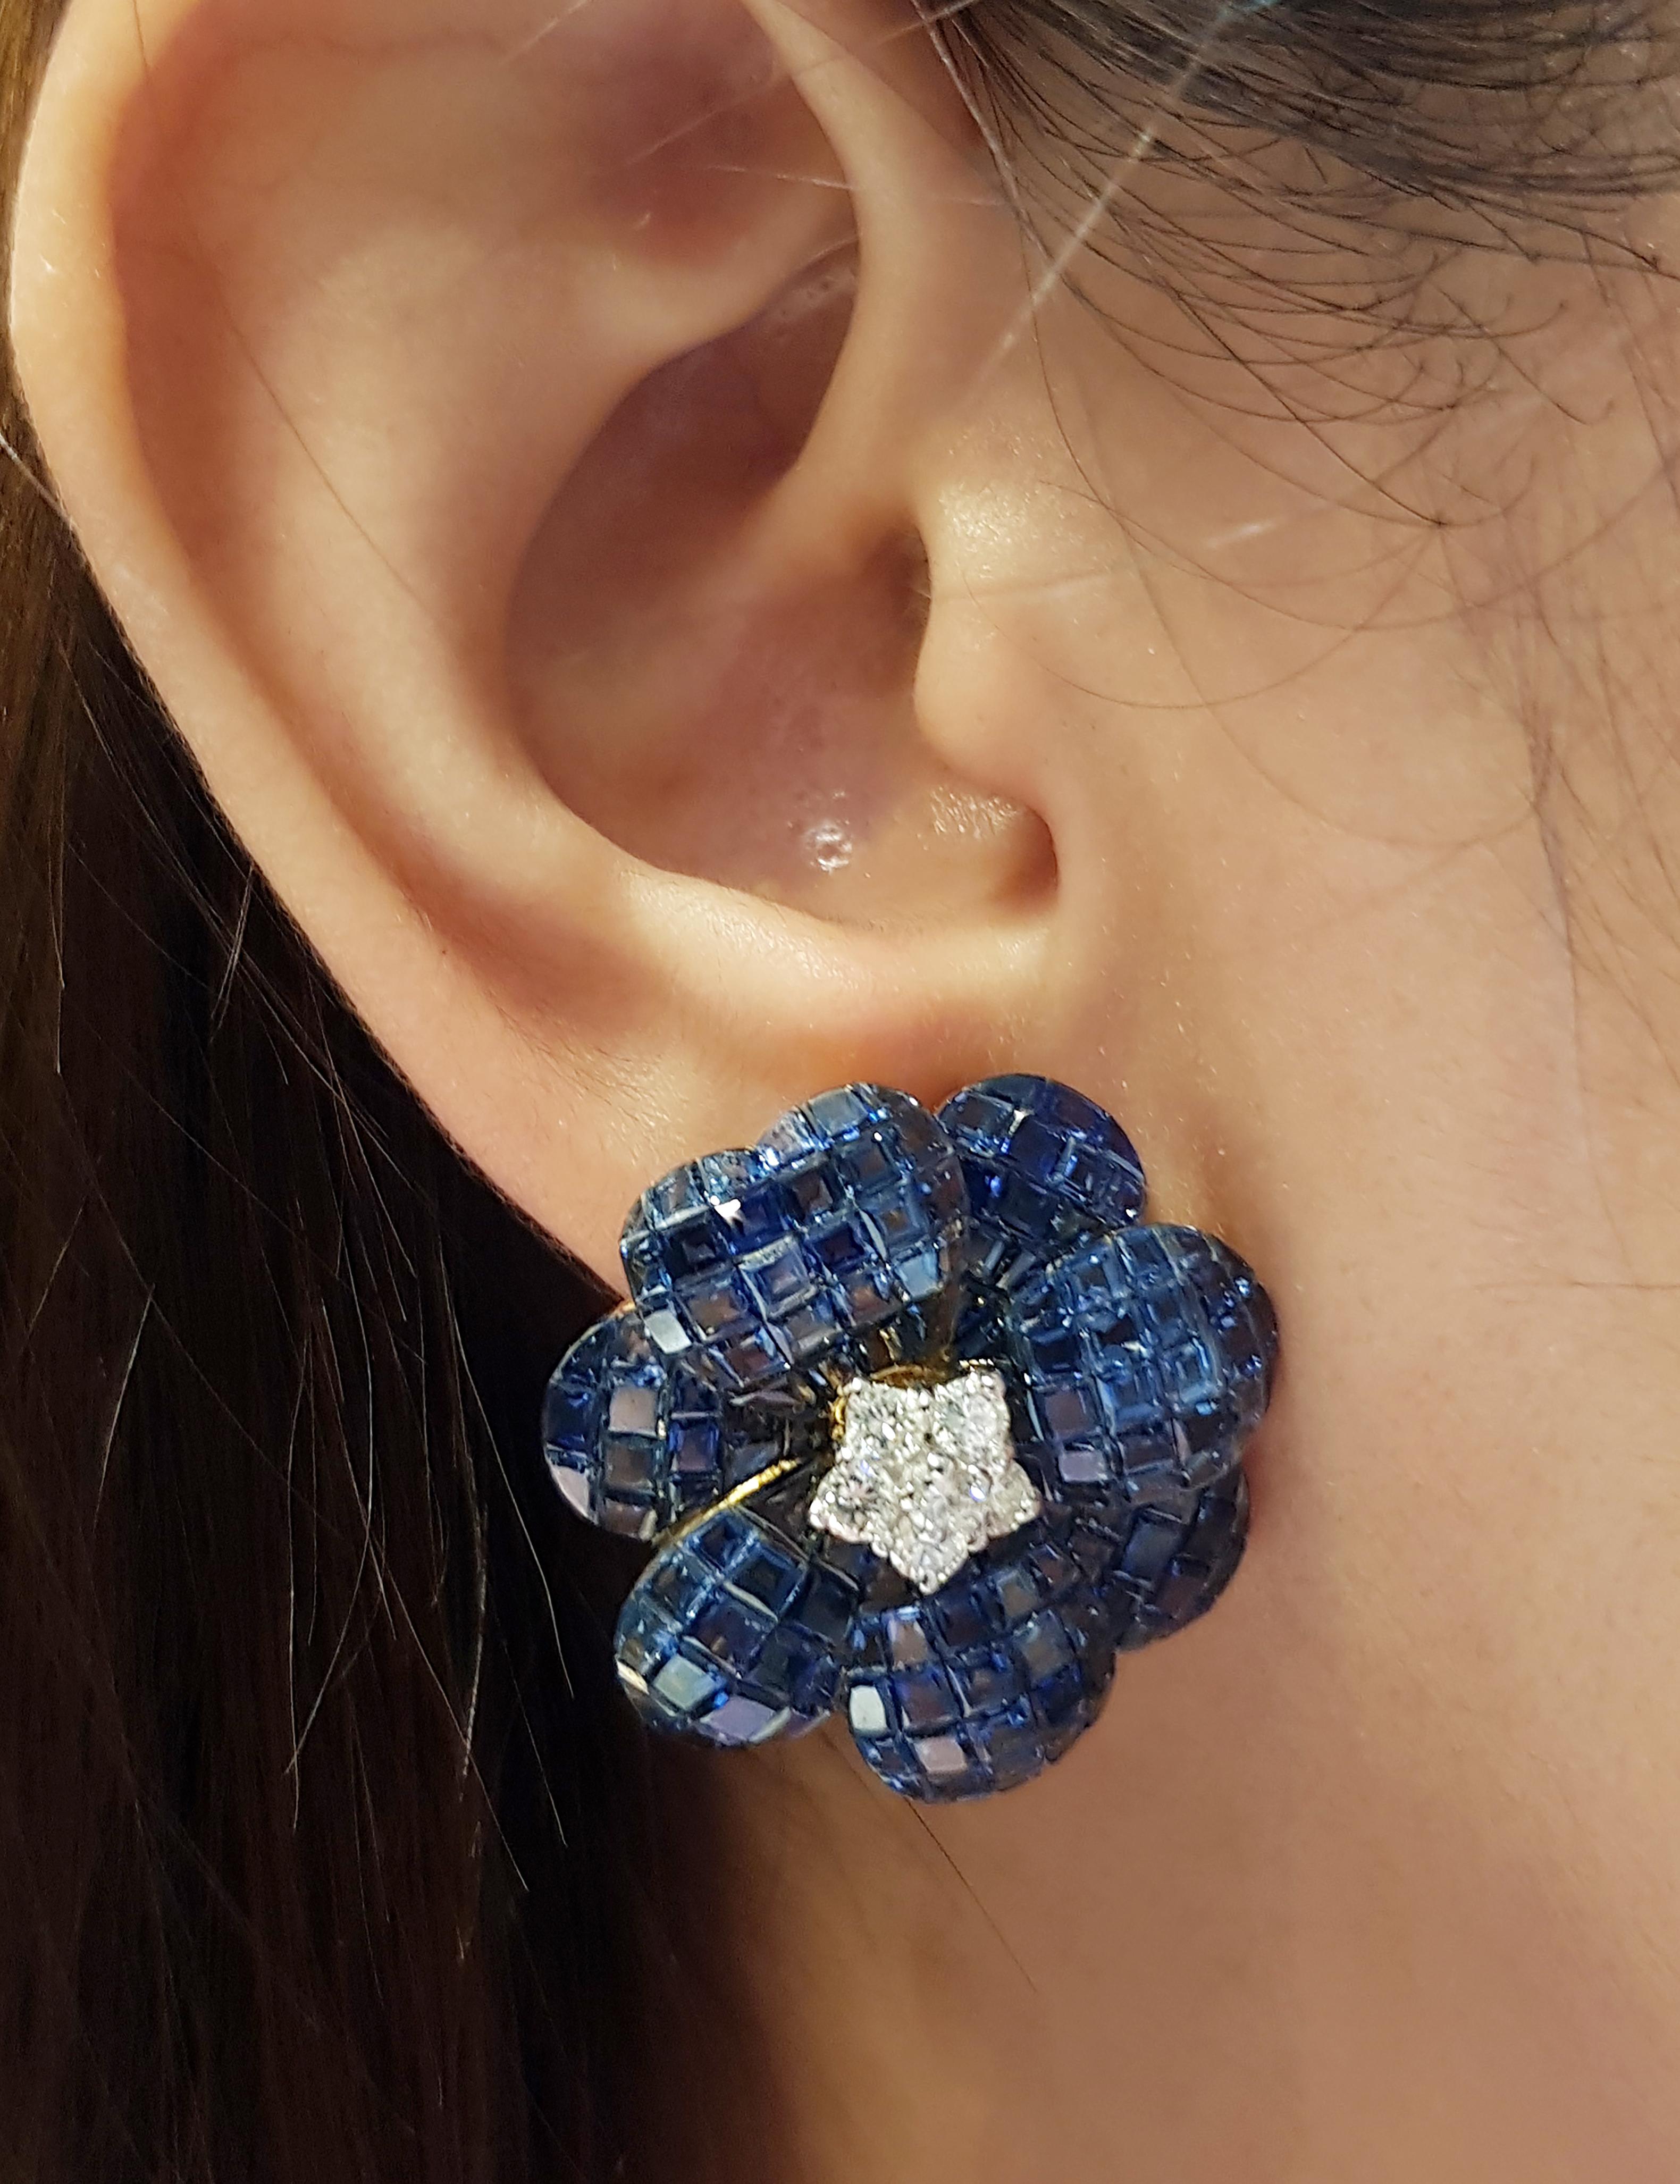 Blauer Saphir 61,70 Karat mit Diamant 0,80 Karat Ohrringe in 18 Karat Goldfassung

Breite: 2,6 cm 
Länge: 2,6 cm
Gesamtgewicht: 22,95 Gramm

